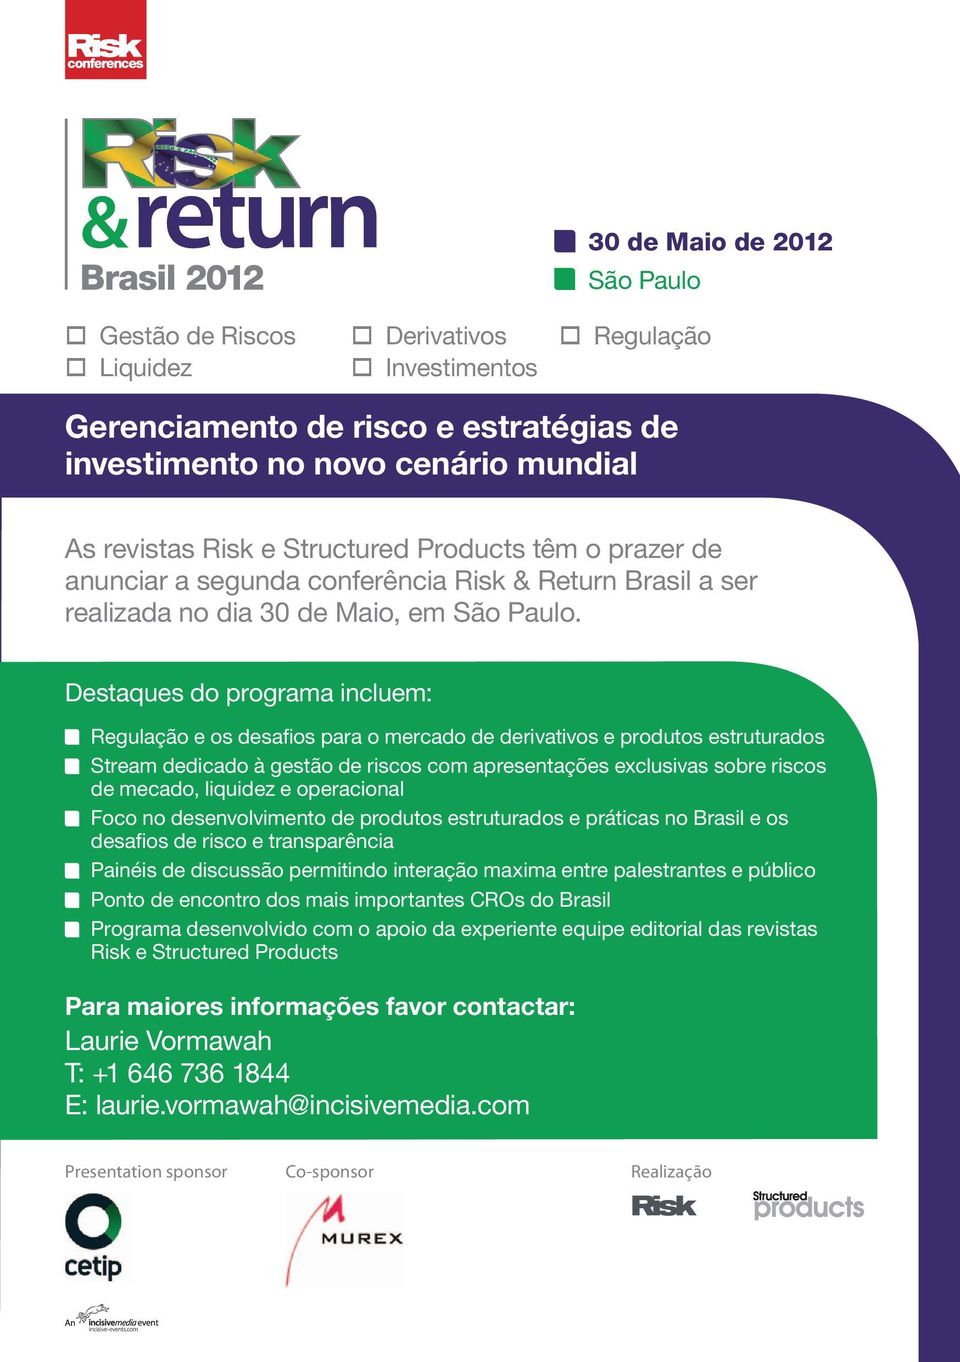 conferência Risk & Return Brasil a ser realizada no dia 30 de Maio, em São Paulo.